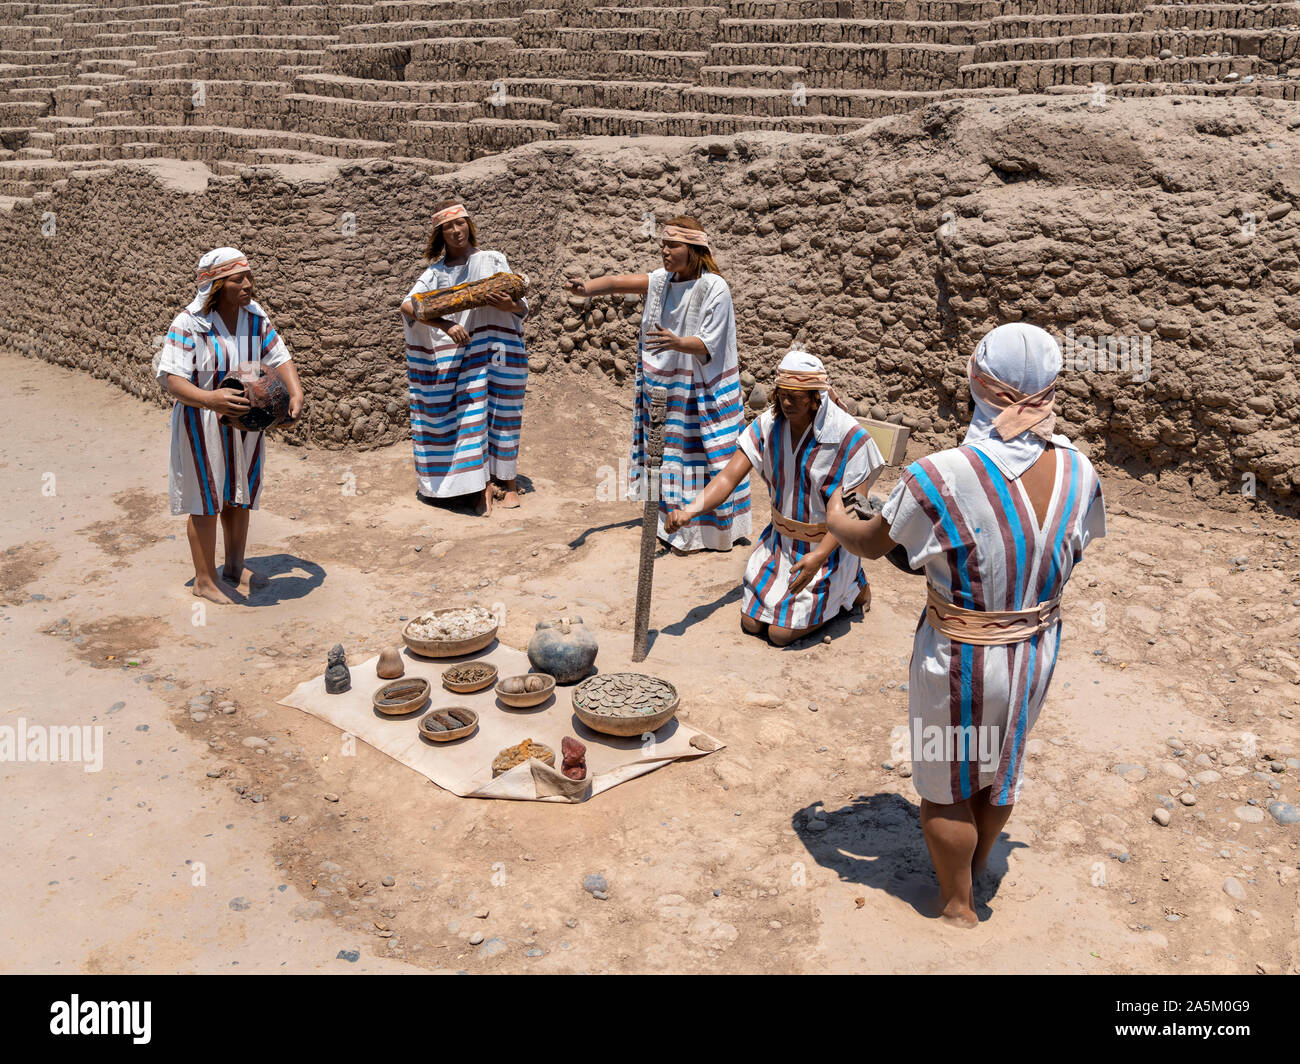 Tableau zeigt eine Ychsma Beerdigung Ritual in die Ruinen der Huaca Pucllana, ein Adobe Pyramide aus der Zeit um 400 N.CHR., Miraflores, Lima, Peru, Südafrika Amer Stockfoto